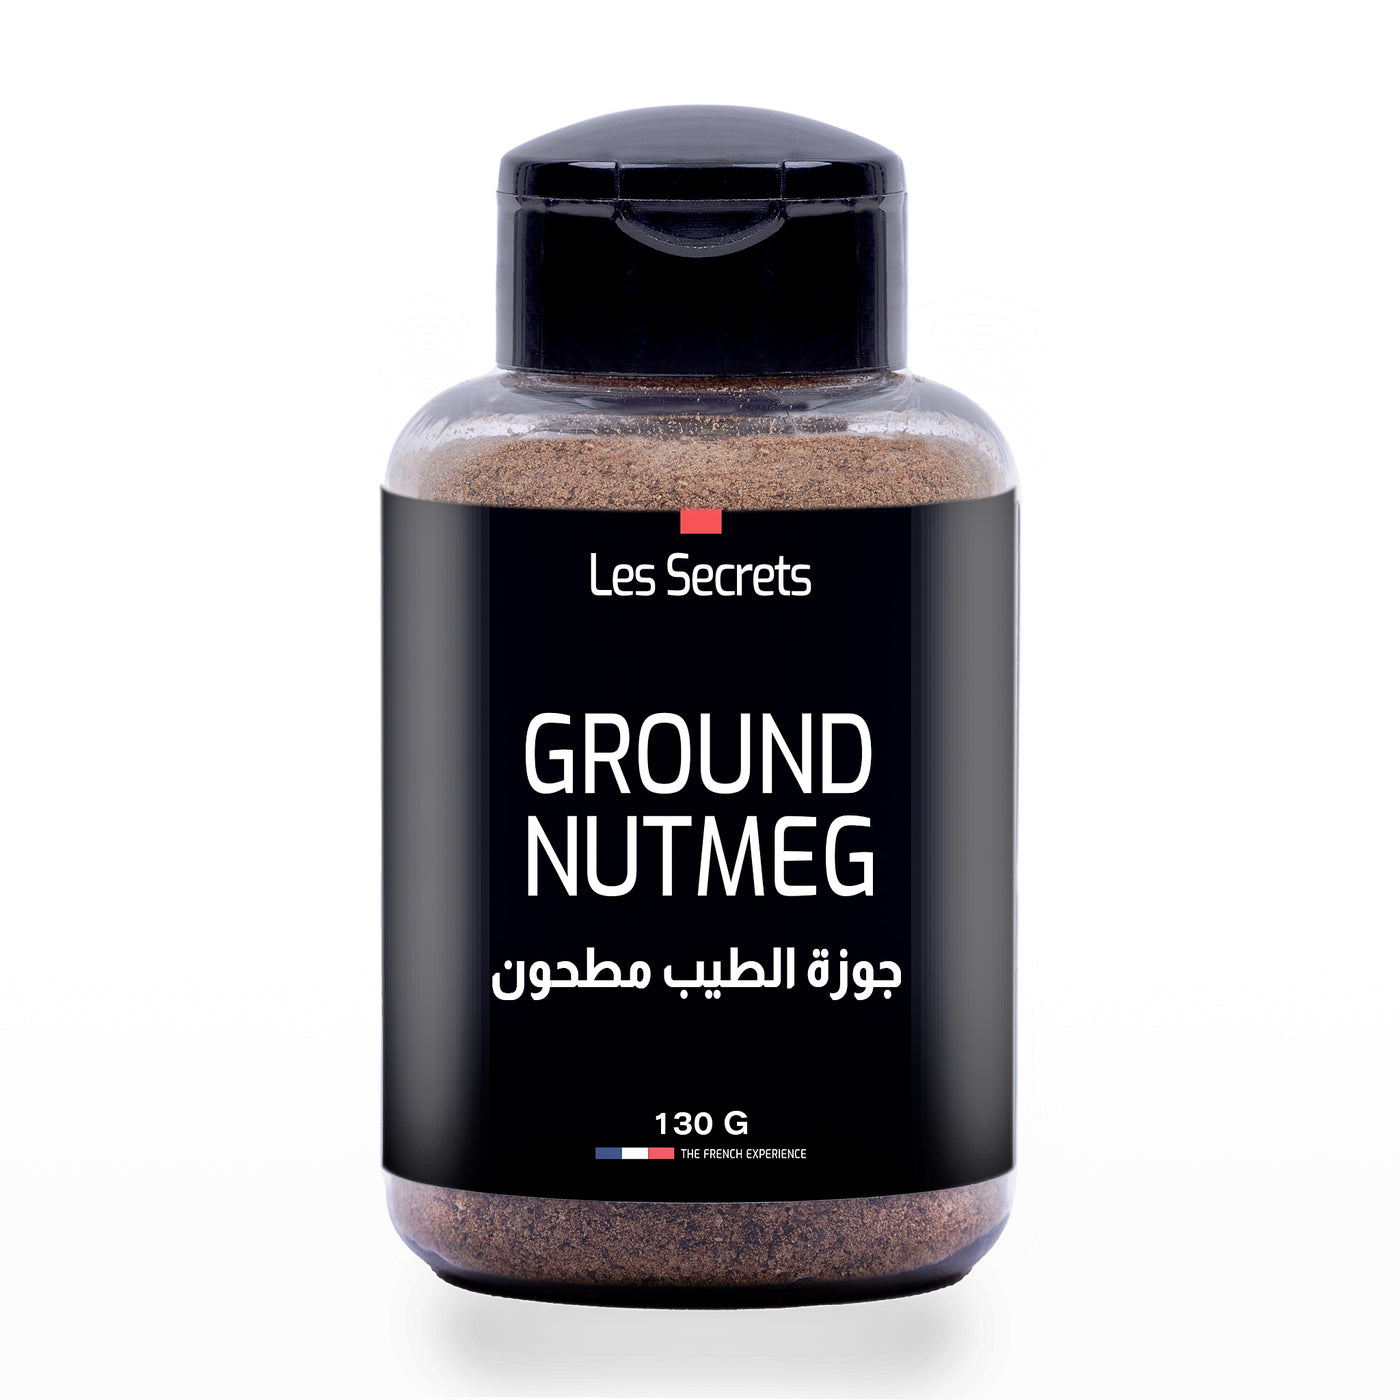 Ground Nutmeg - جوزة الطيب مطحون